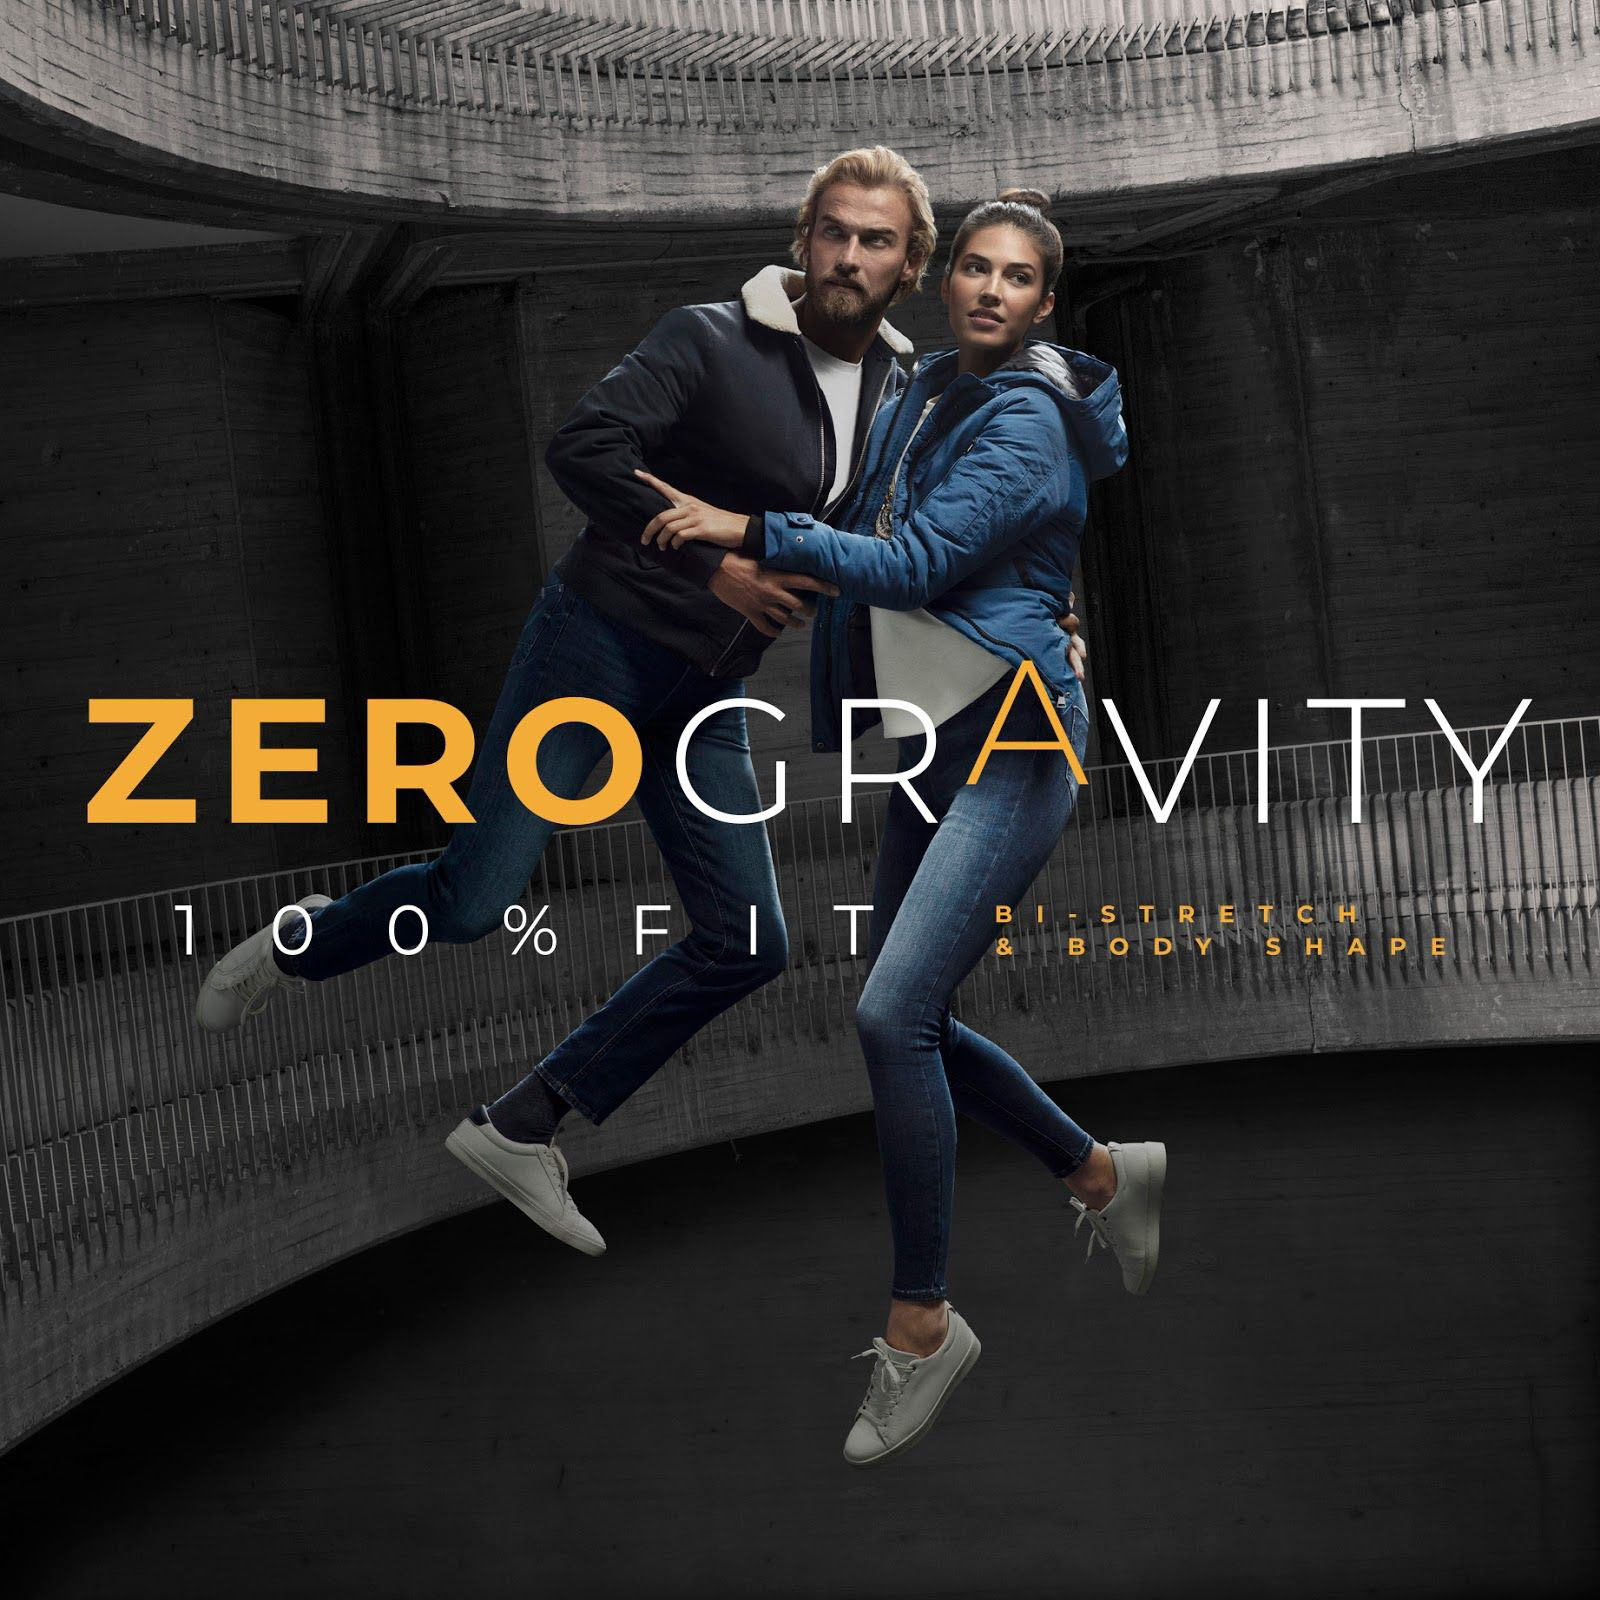 Campaña de publicidad "Zero Gravity' para Springfield, elaborada por Enri Mür y Equipo Singular junto a Javier Tles.